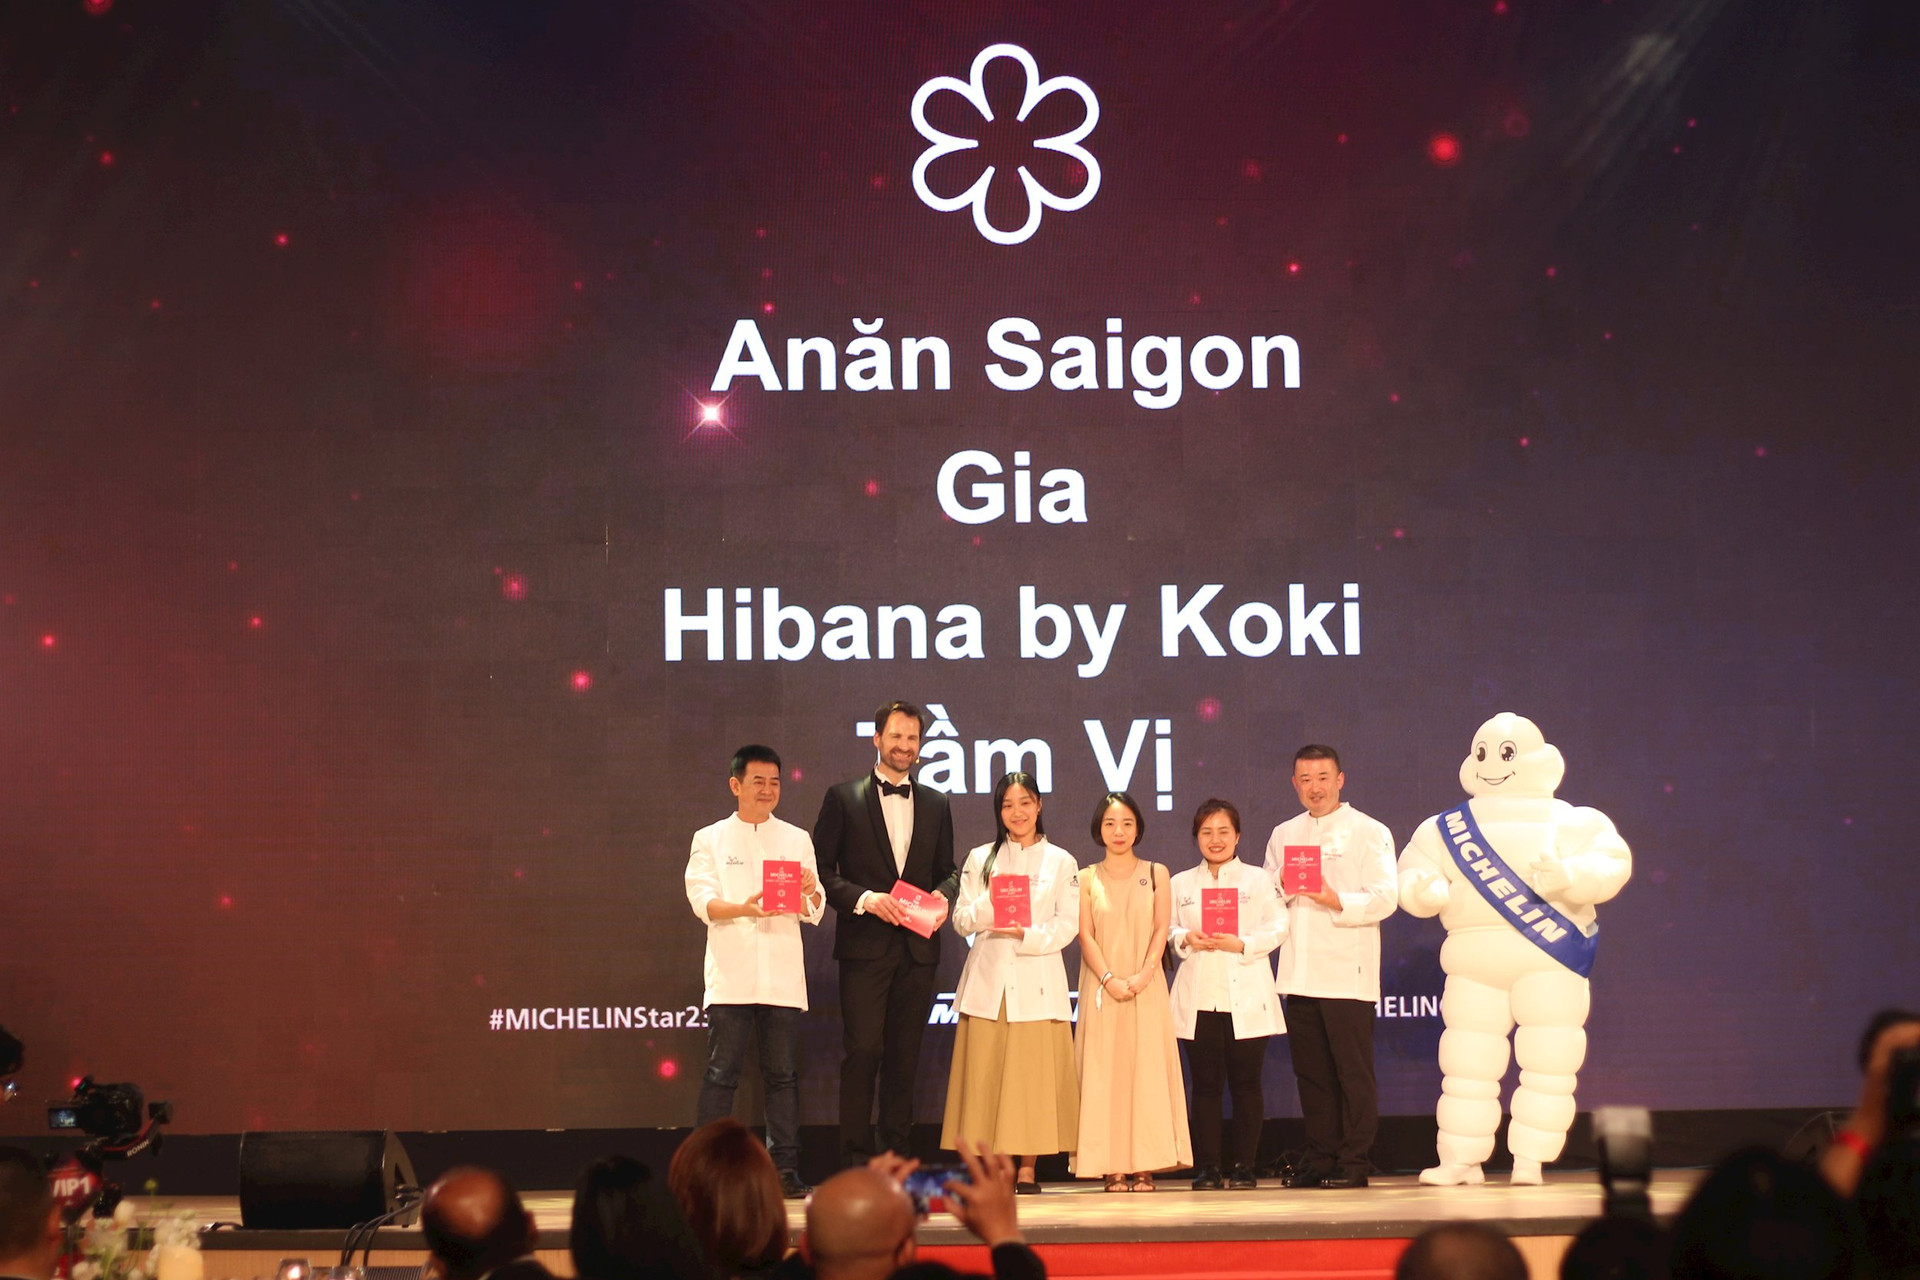 Lộ diện 4 nhà hàng Việt Nam đầu tiên được gắn sao Michelin danh giá: 3 nhà hàng tại Hà Nội và 1 nhà hàng TP HCM - Ảnh 1.